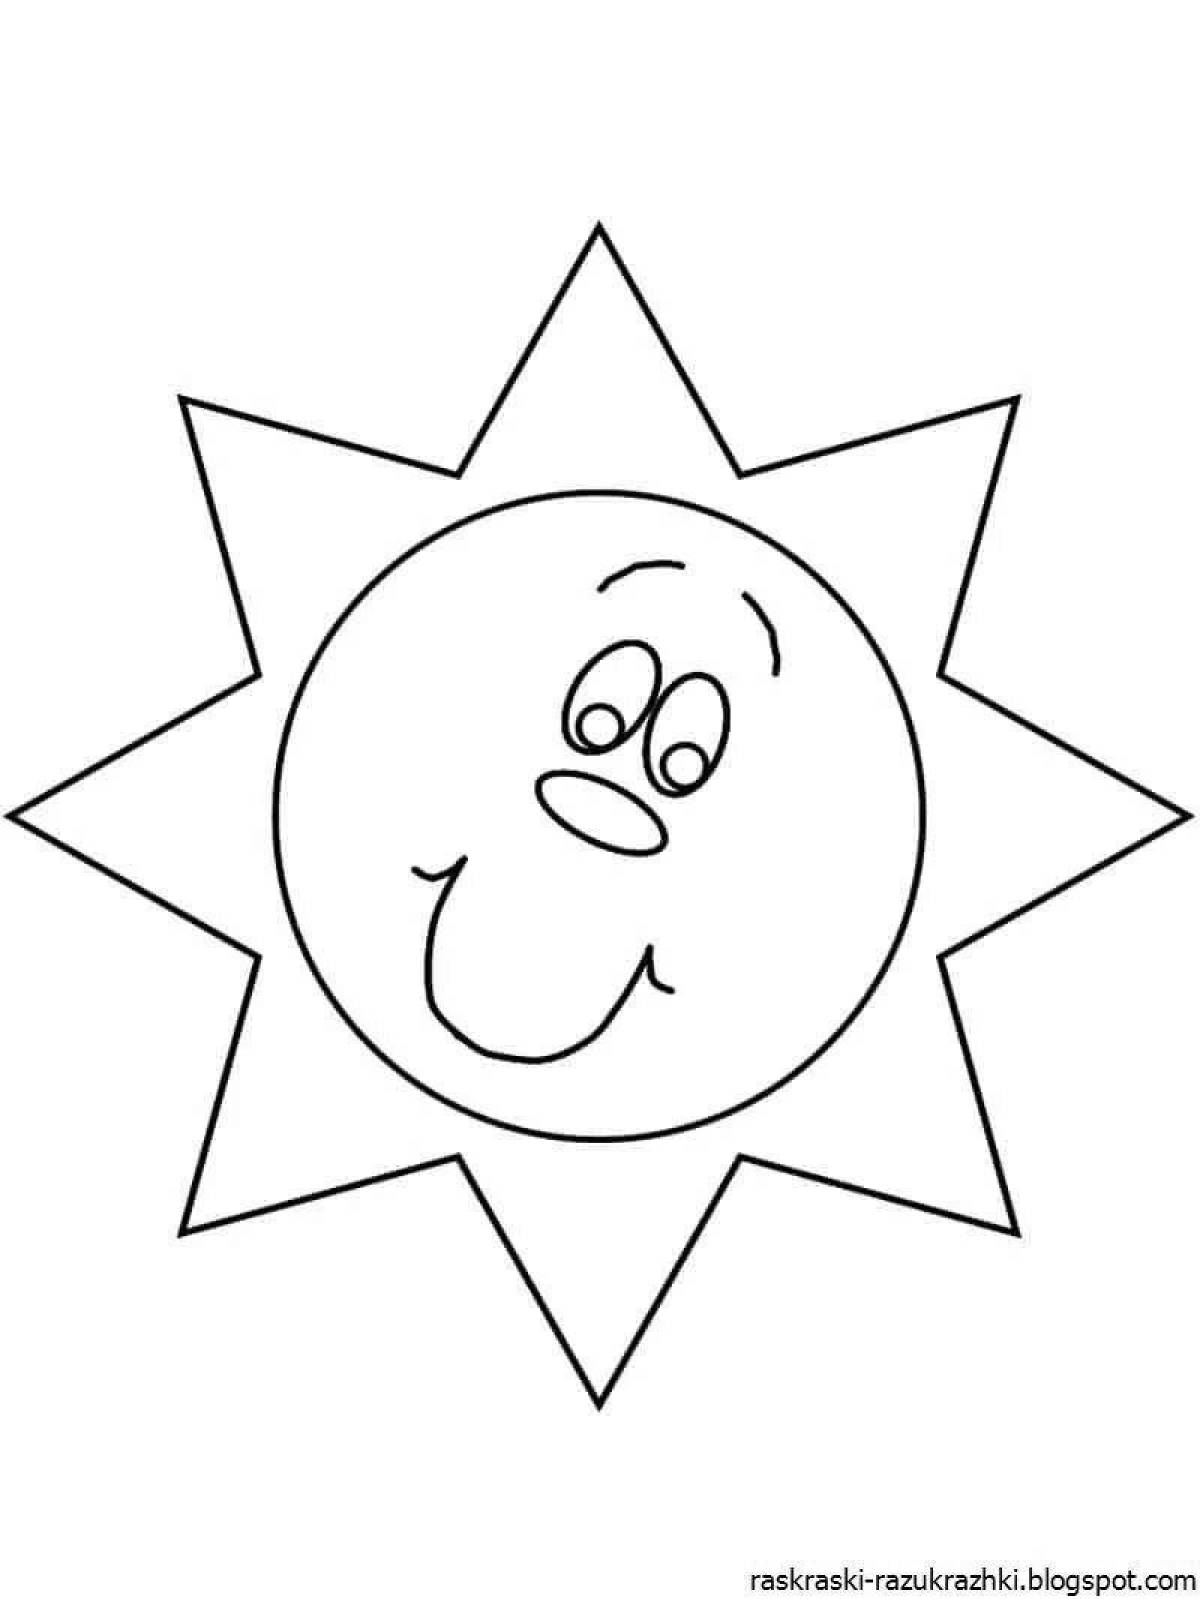 Анимированная страница раскраски «солнце»